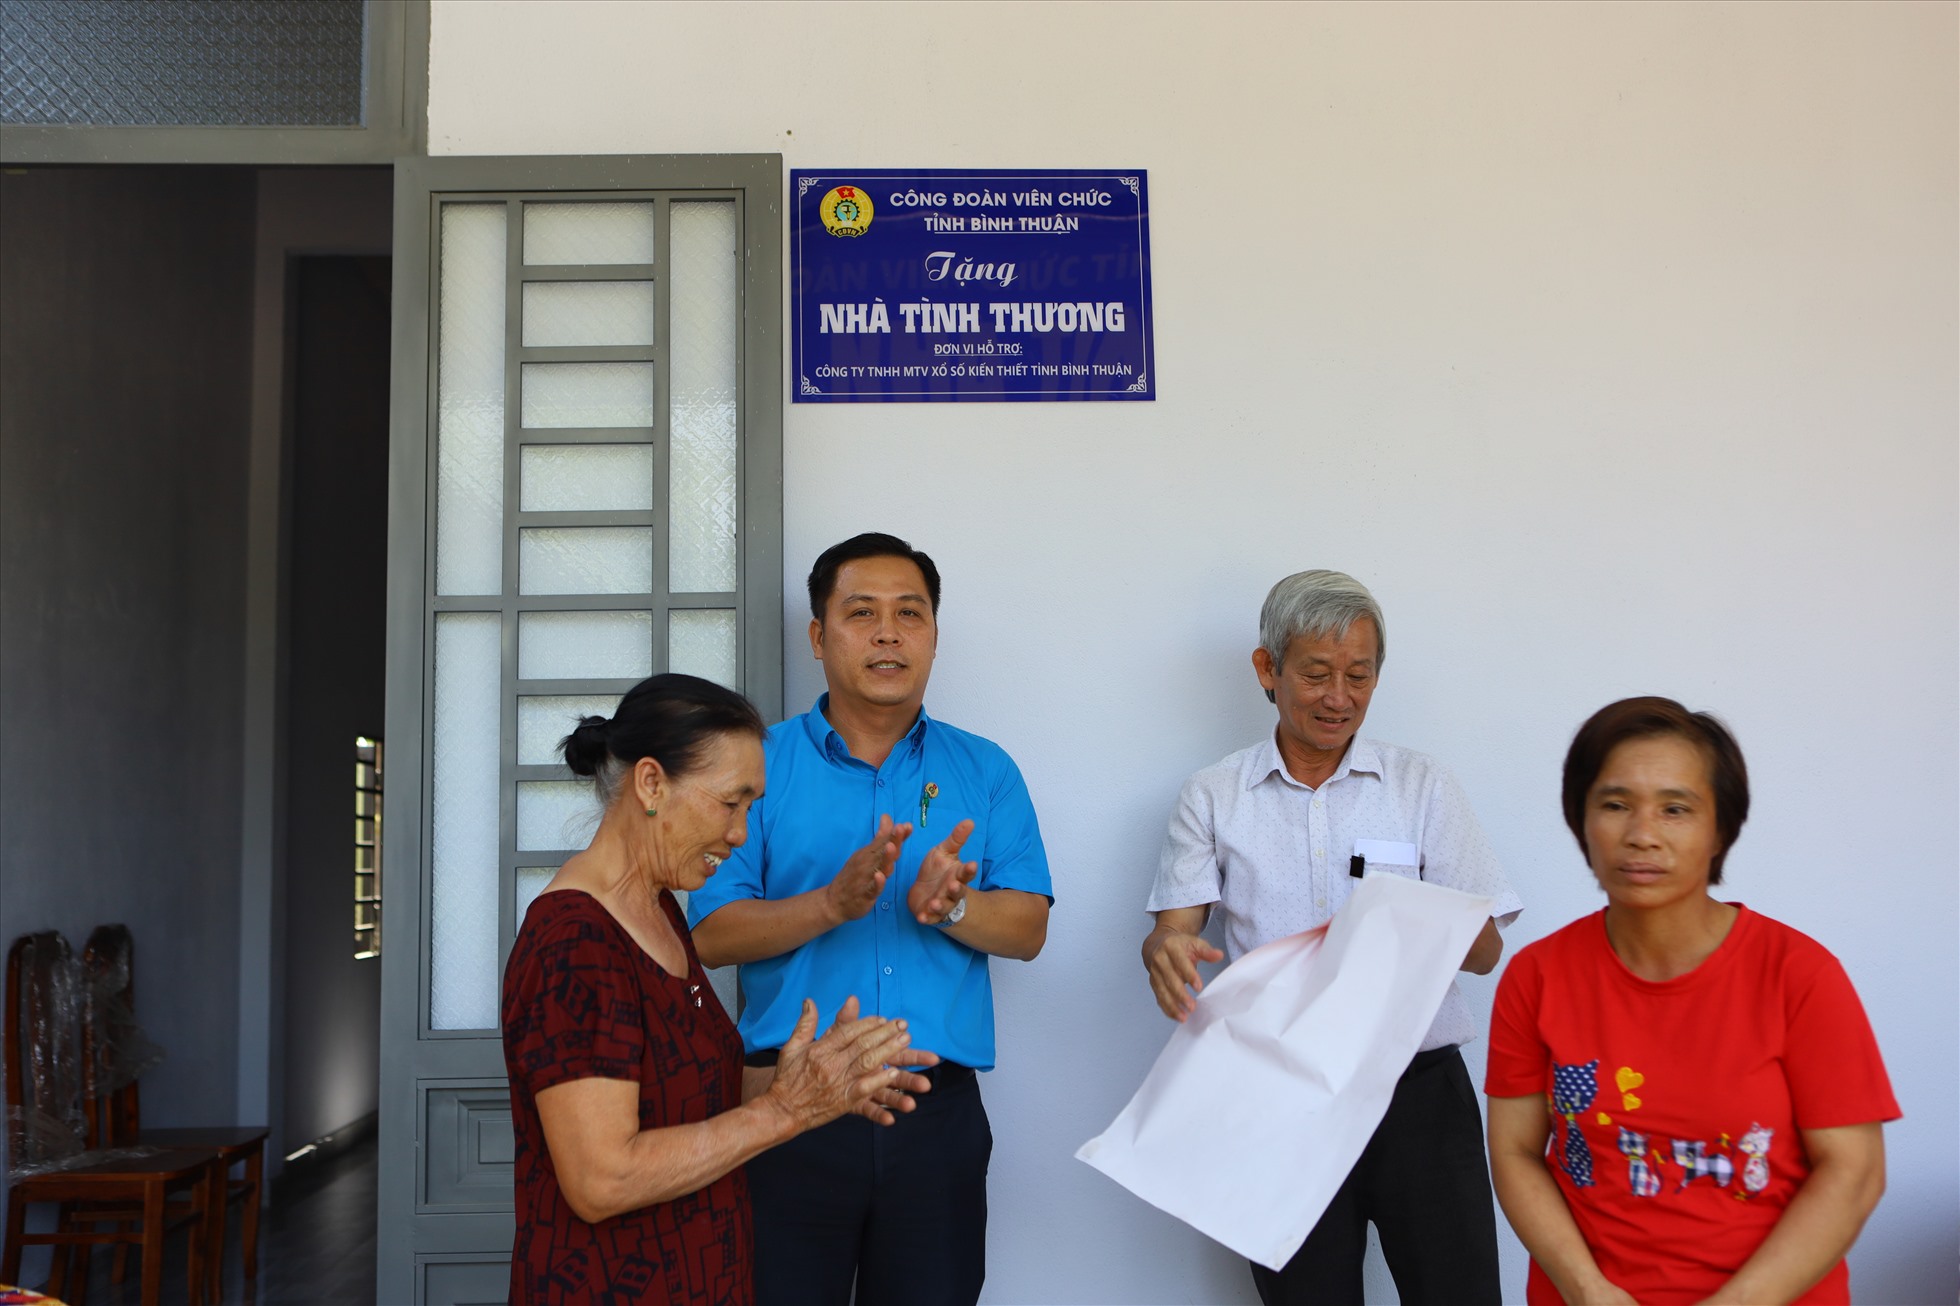 Chị Hoàng cùng gia đình vui mừng khi cùng CĐVC tỉnh Bình Thuận gỡ băng khánh thành nhà mới. Ảnh: Duy Tuấn